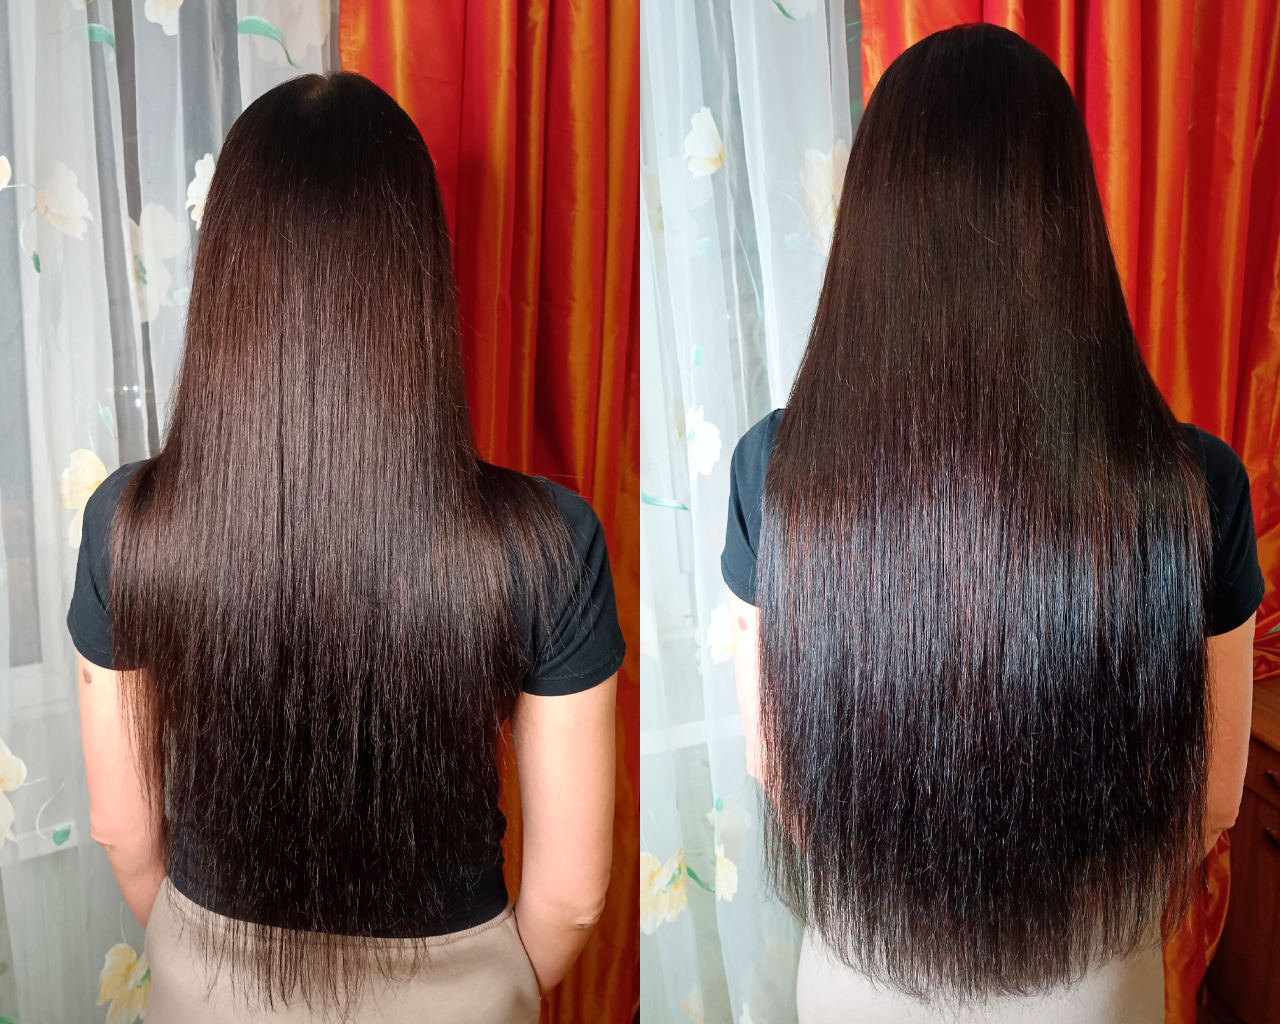 Наращивание волос для объема. Фото до и после